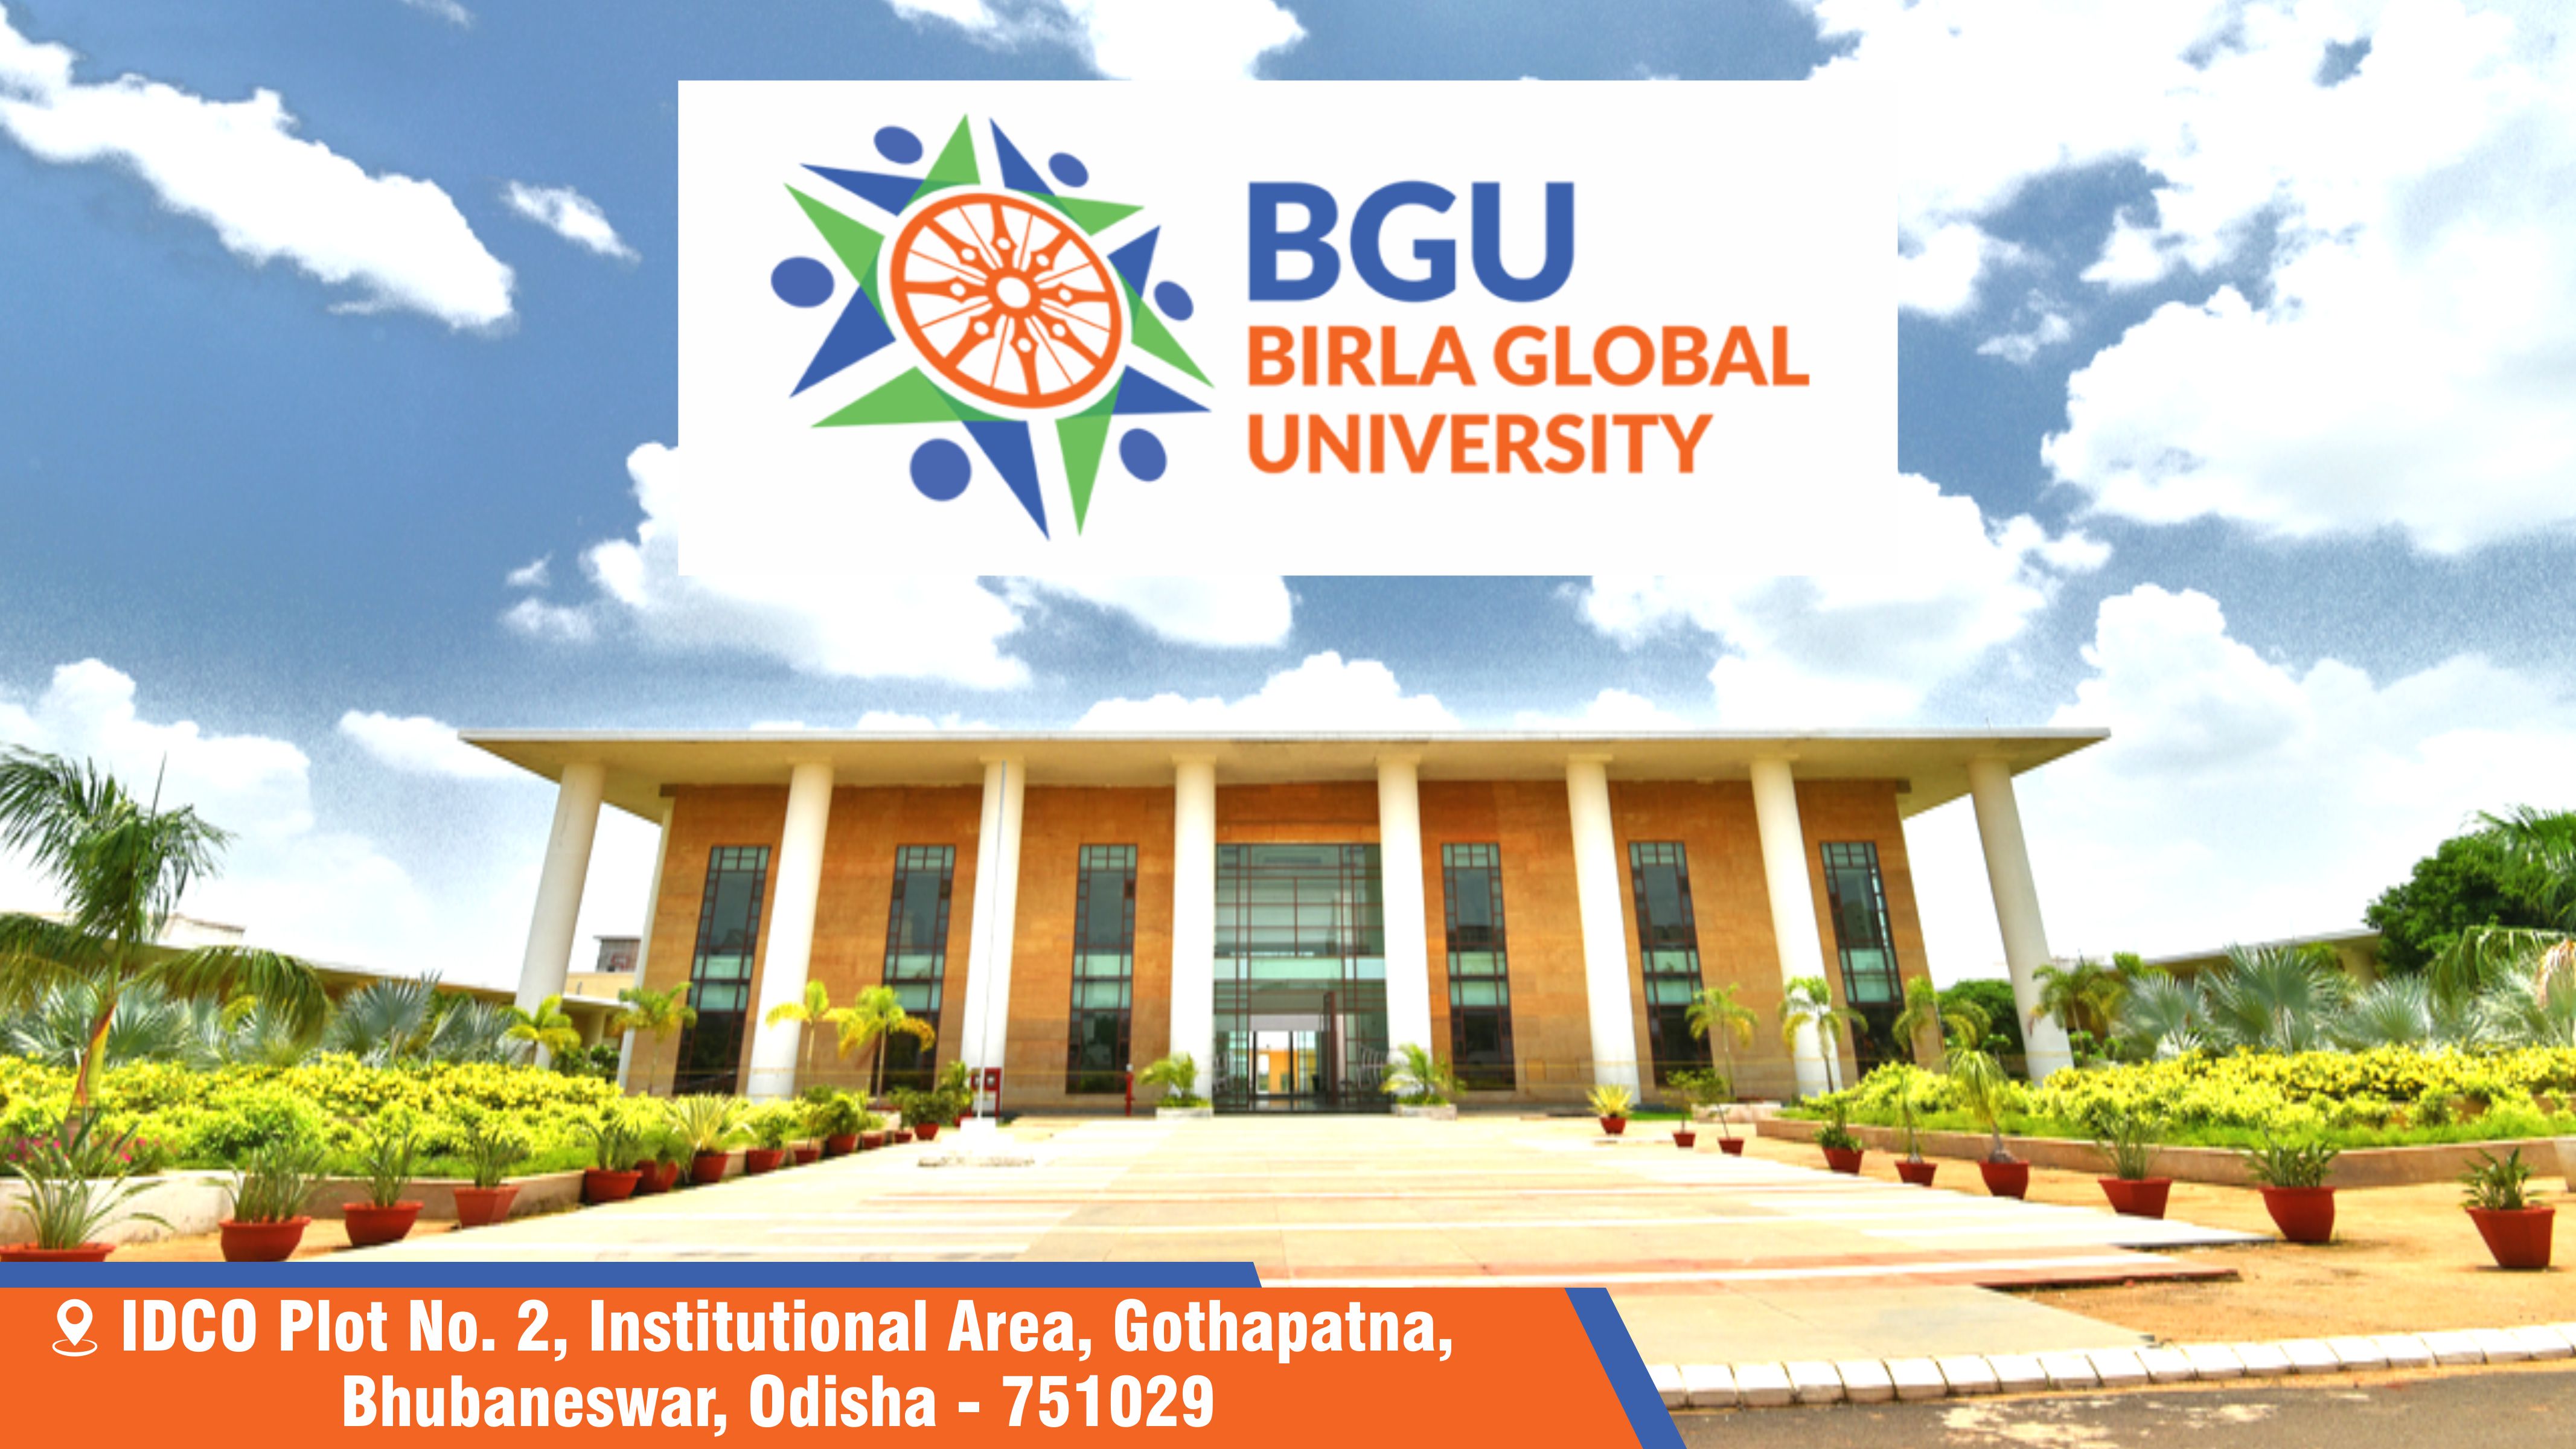 Out Side View of Birla Global University (BGU)